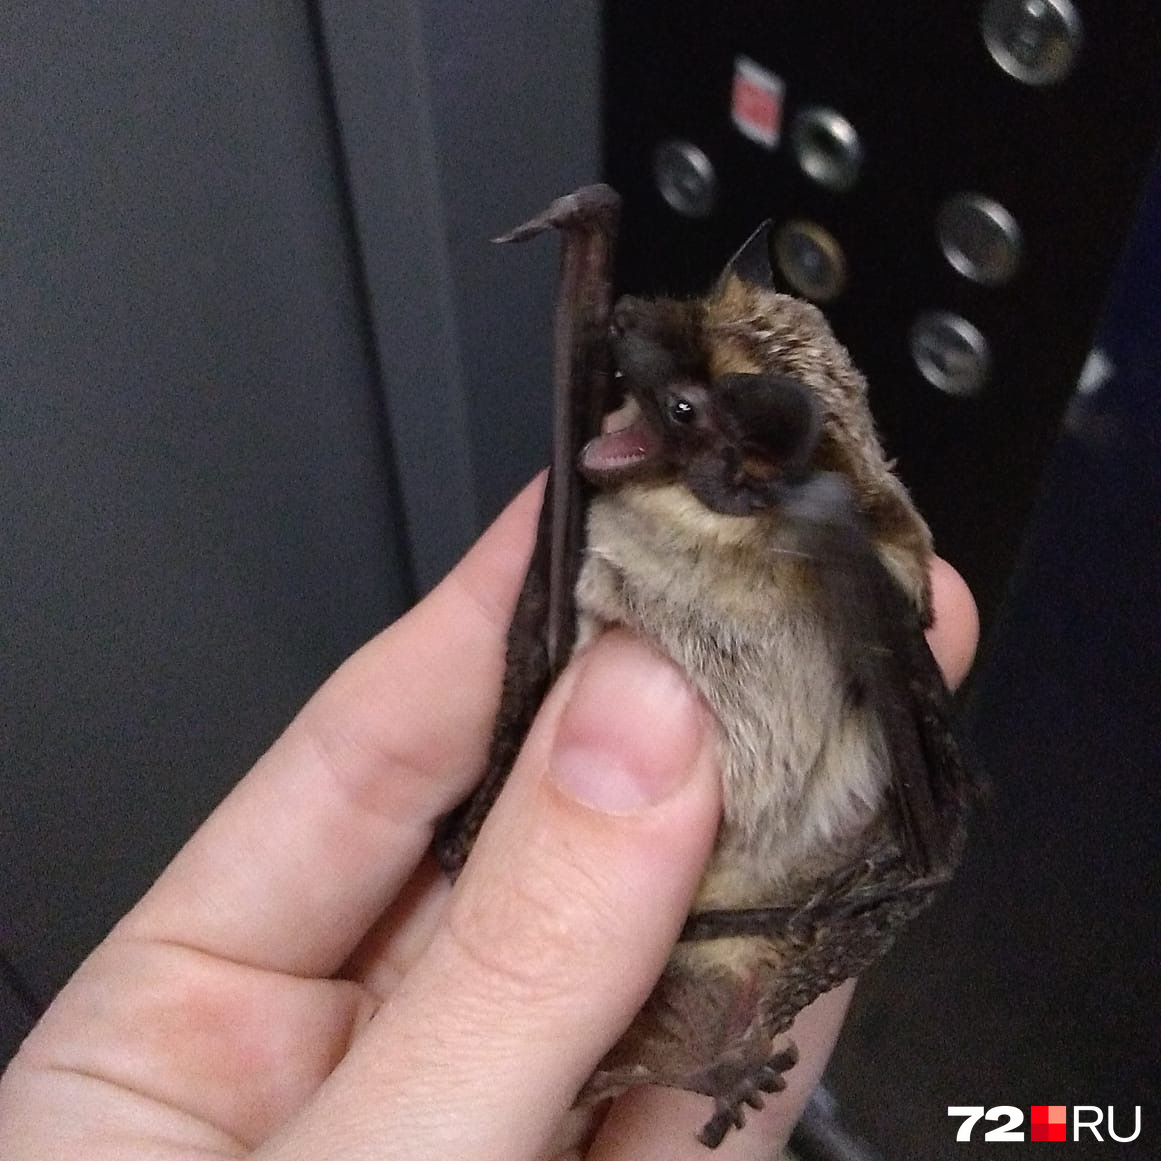 Эту летучую мышь поймали в ЖК «Ямальский», видите на заднем фоне кнопки лифта? Летучие мыши любят высотки